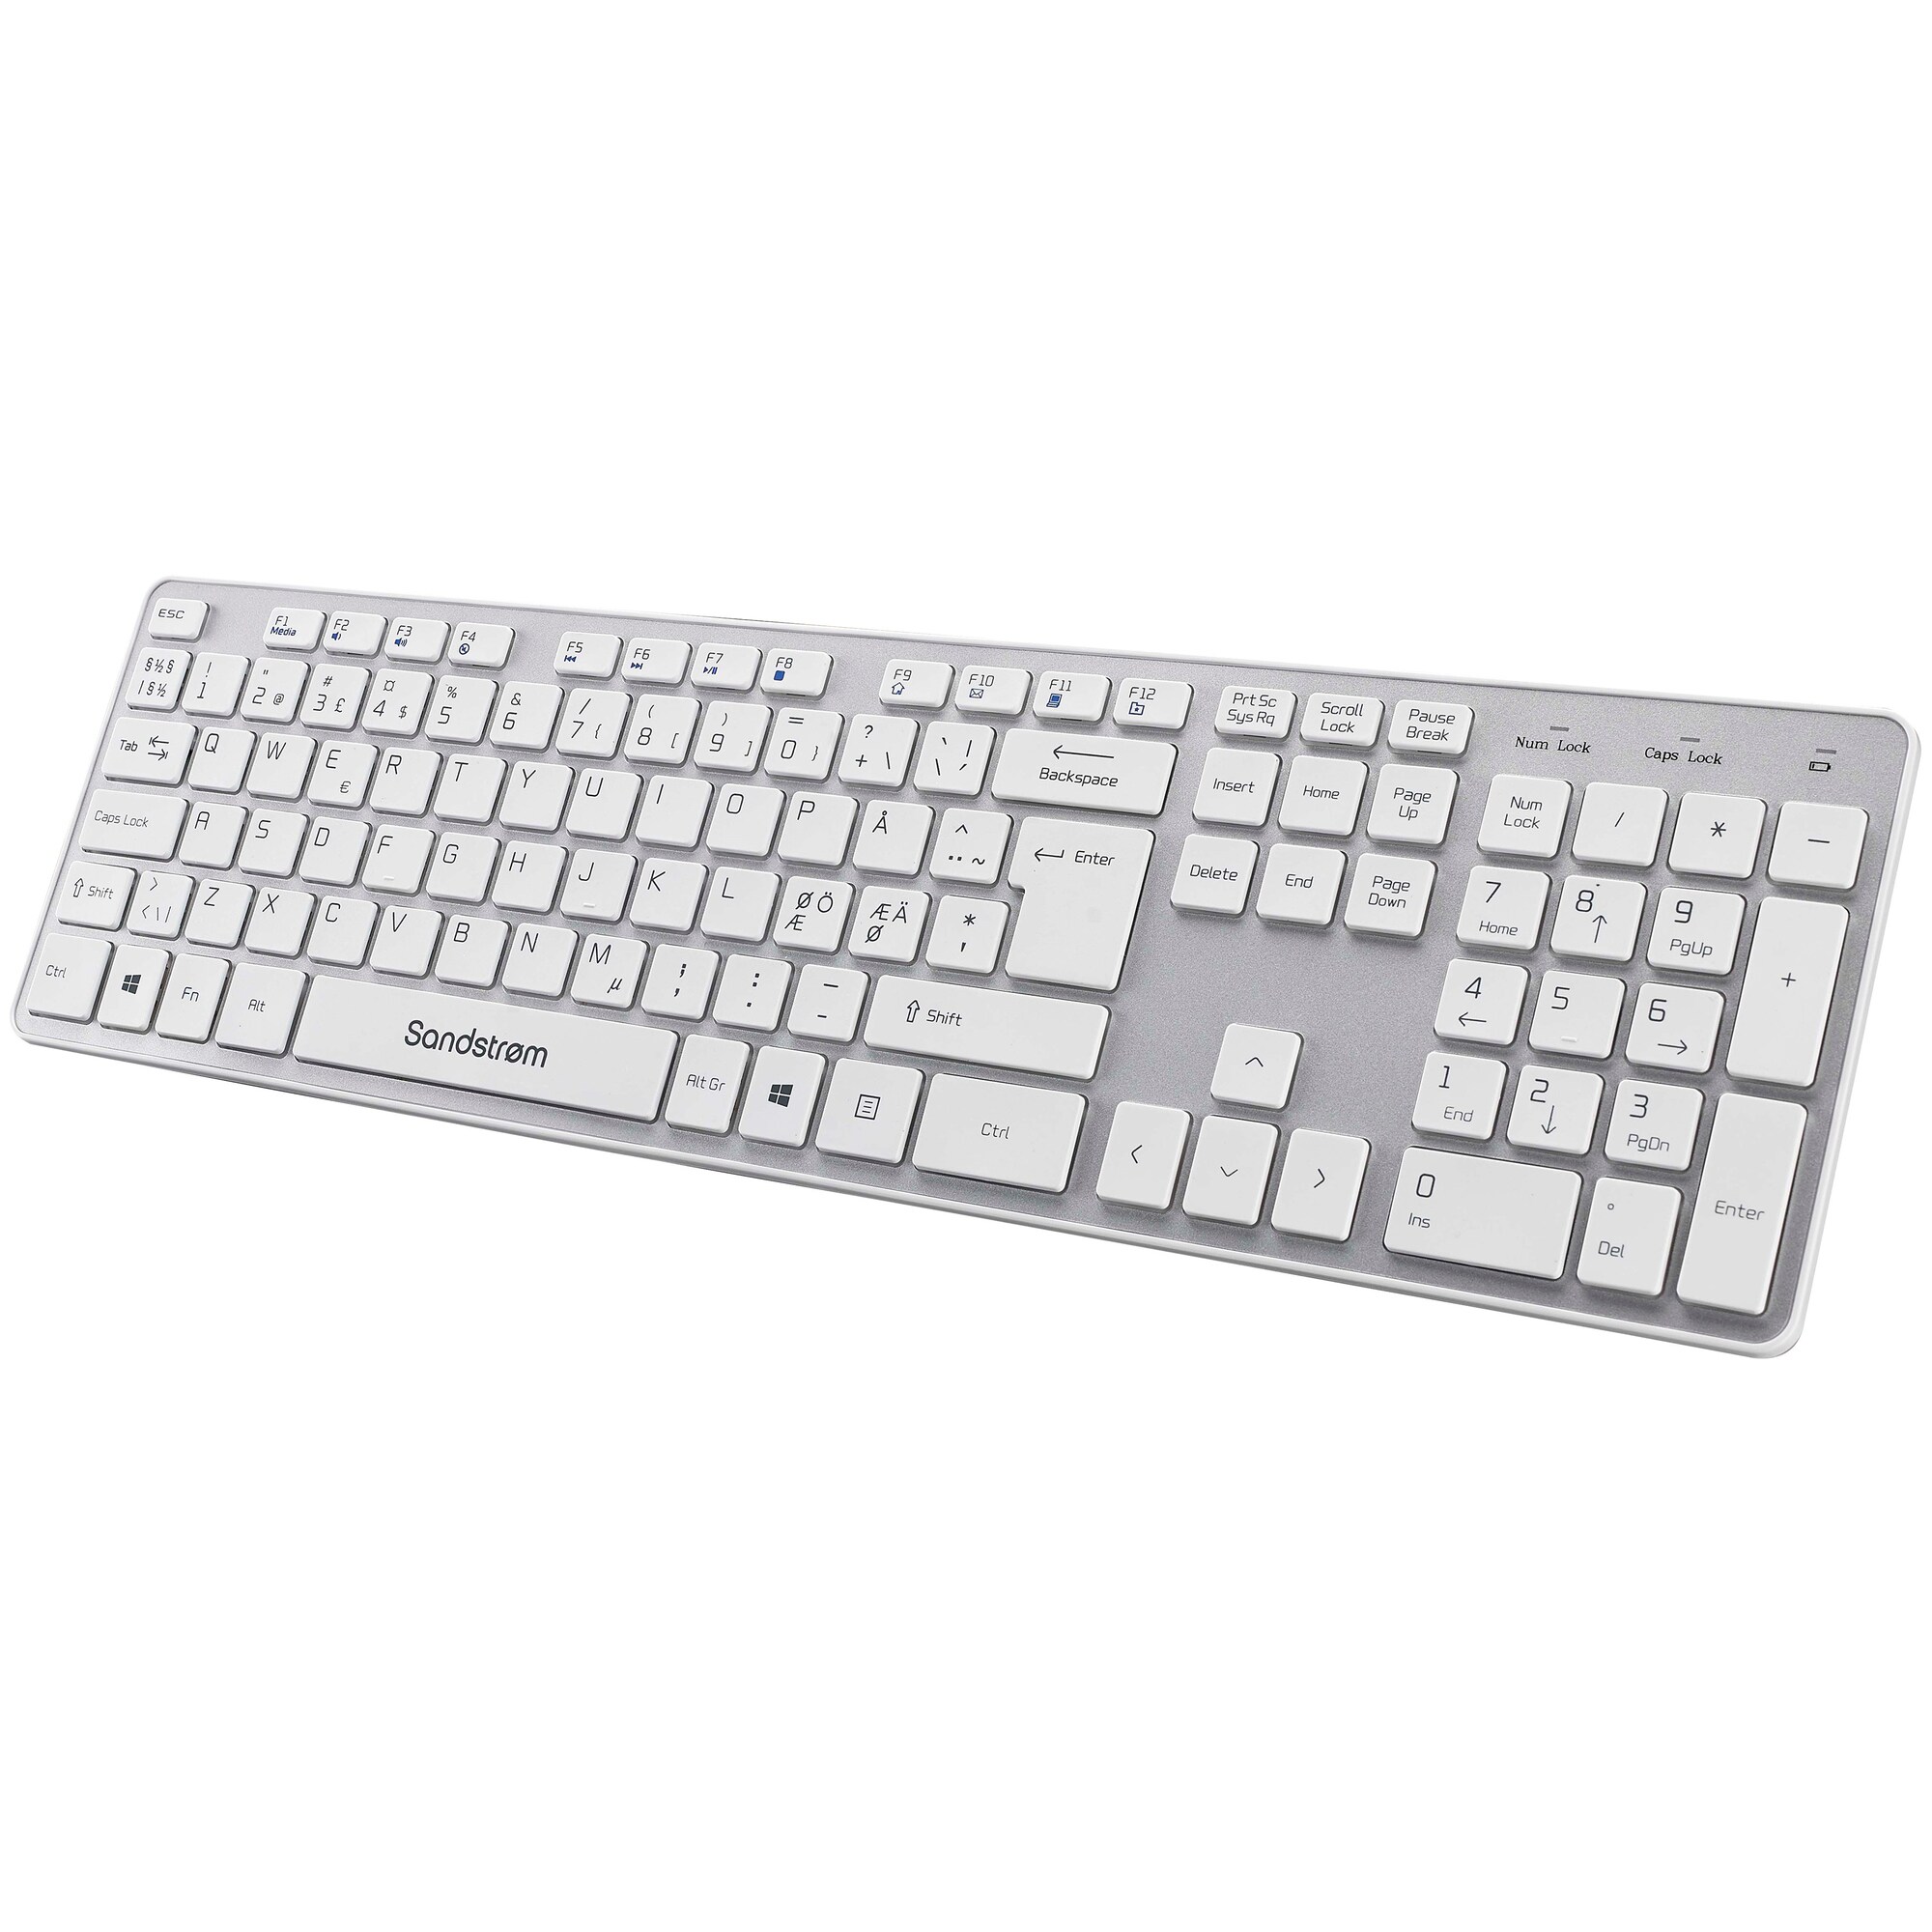 Sandstrøm slankt trådløst tastatur - hvid/grå Elgiganten